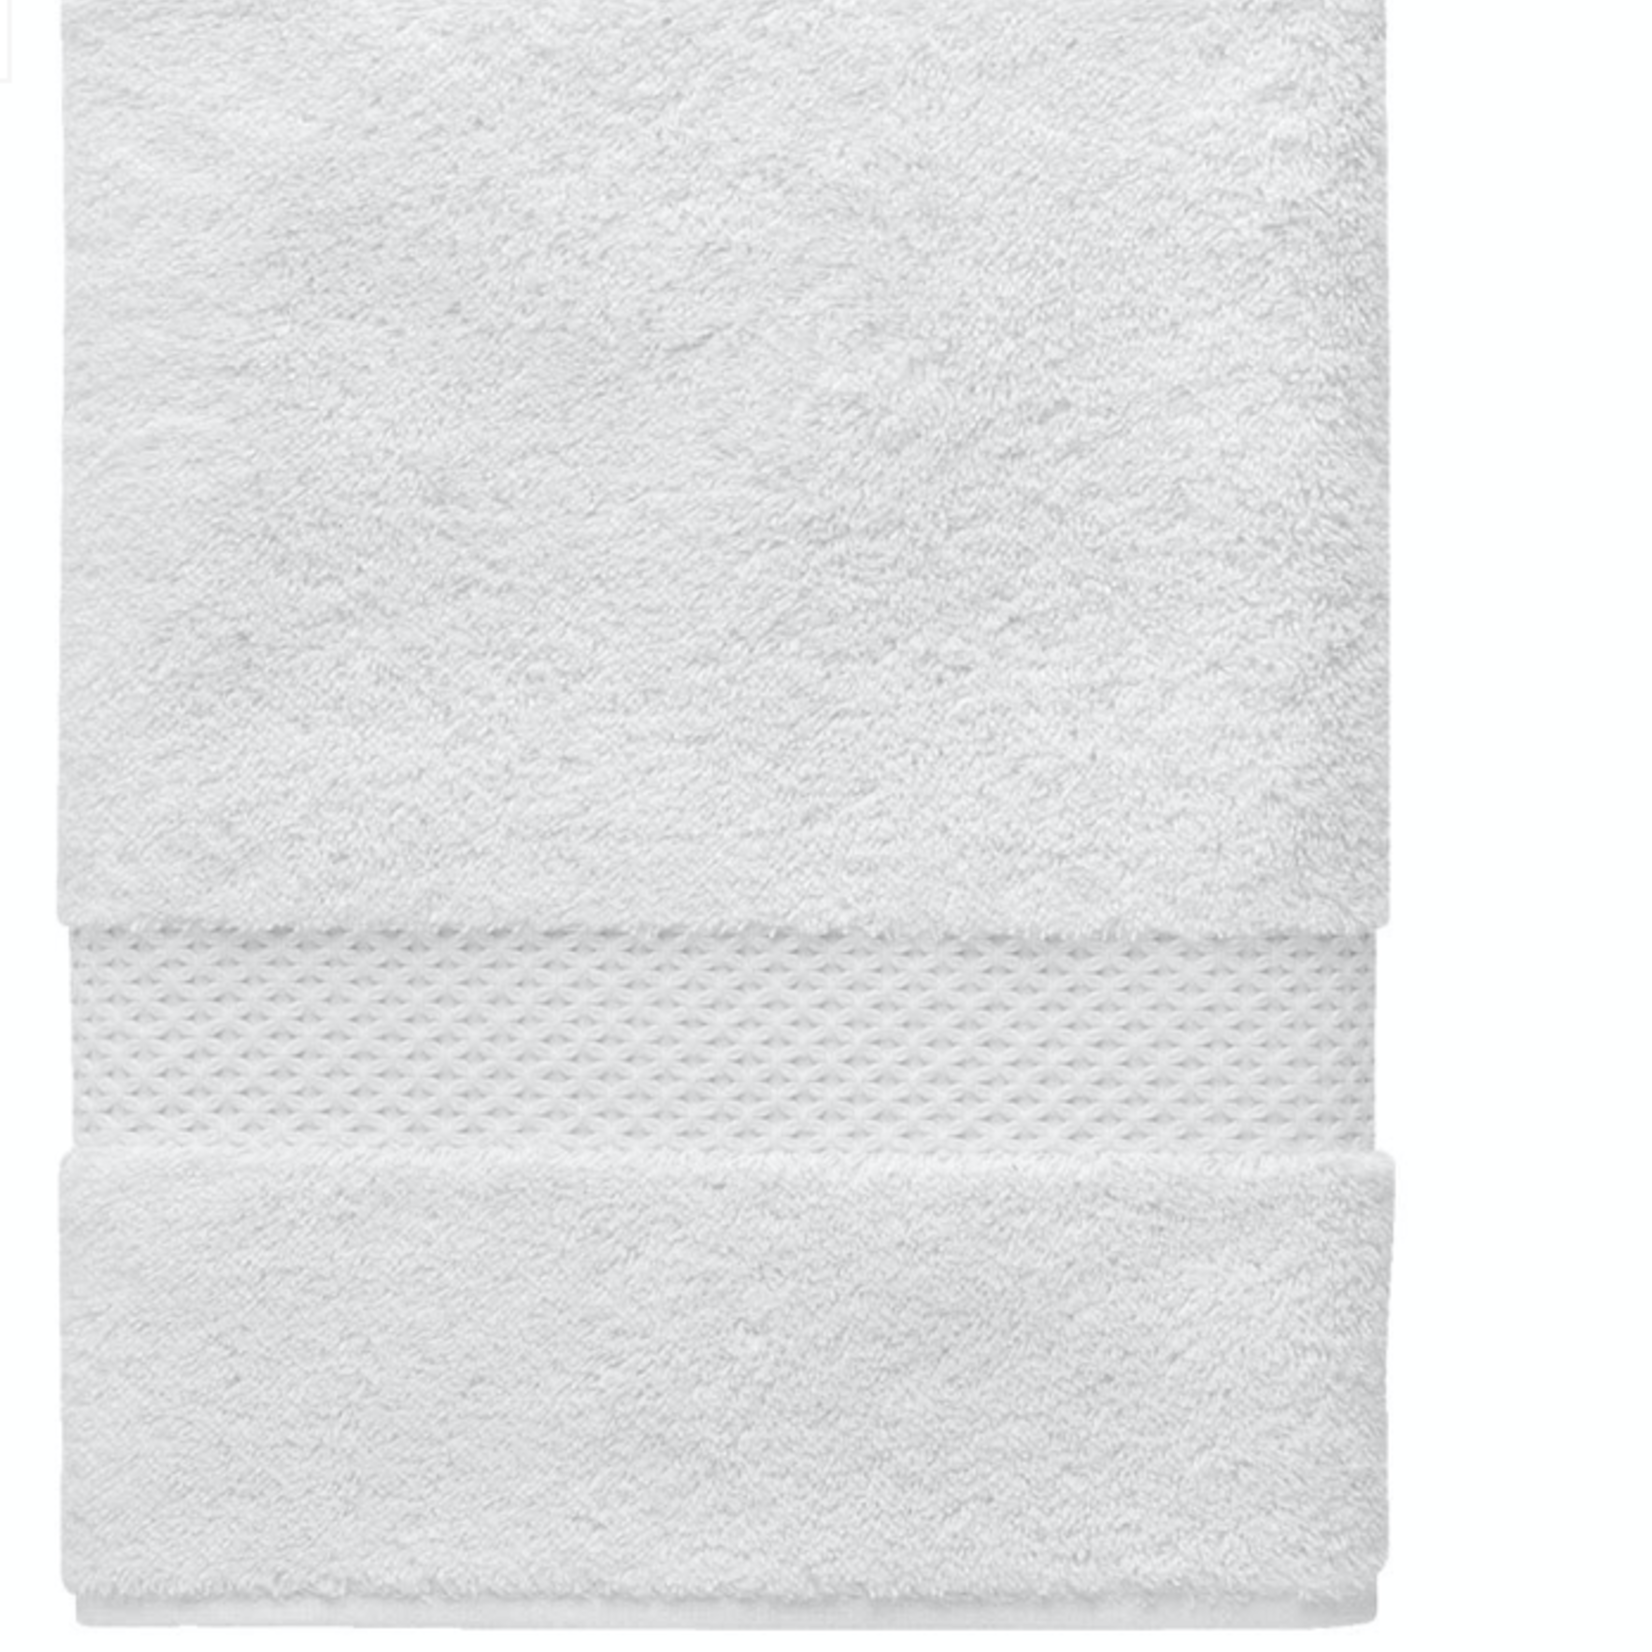 ETOILE (83% cotton, 17% modal) Bath Sheet